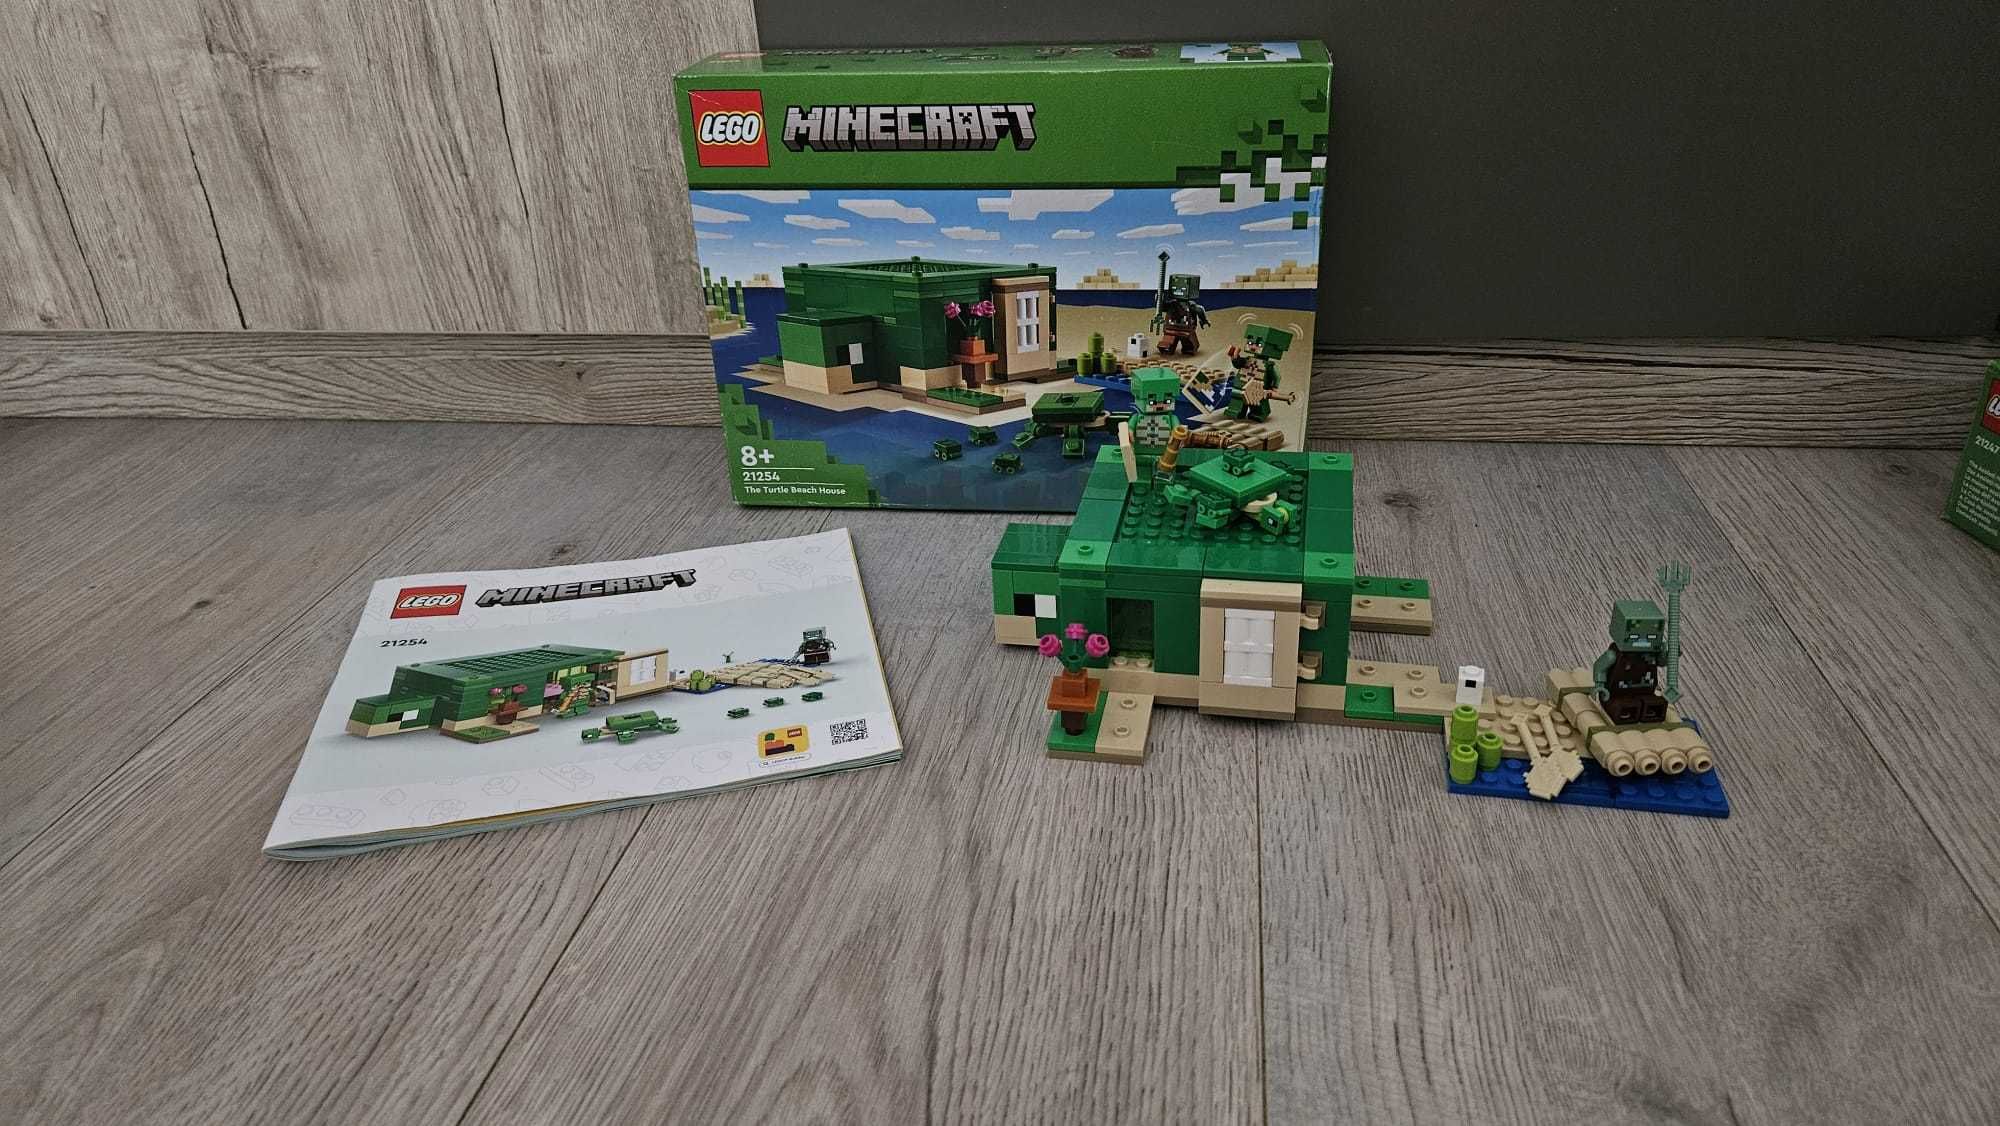 LEGO Minecraft - Casa de pe plaja testoaselor 21254, 234 piese